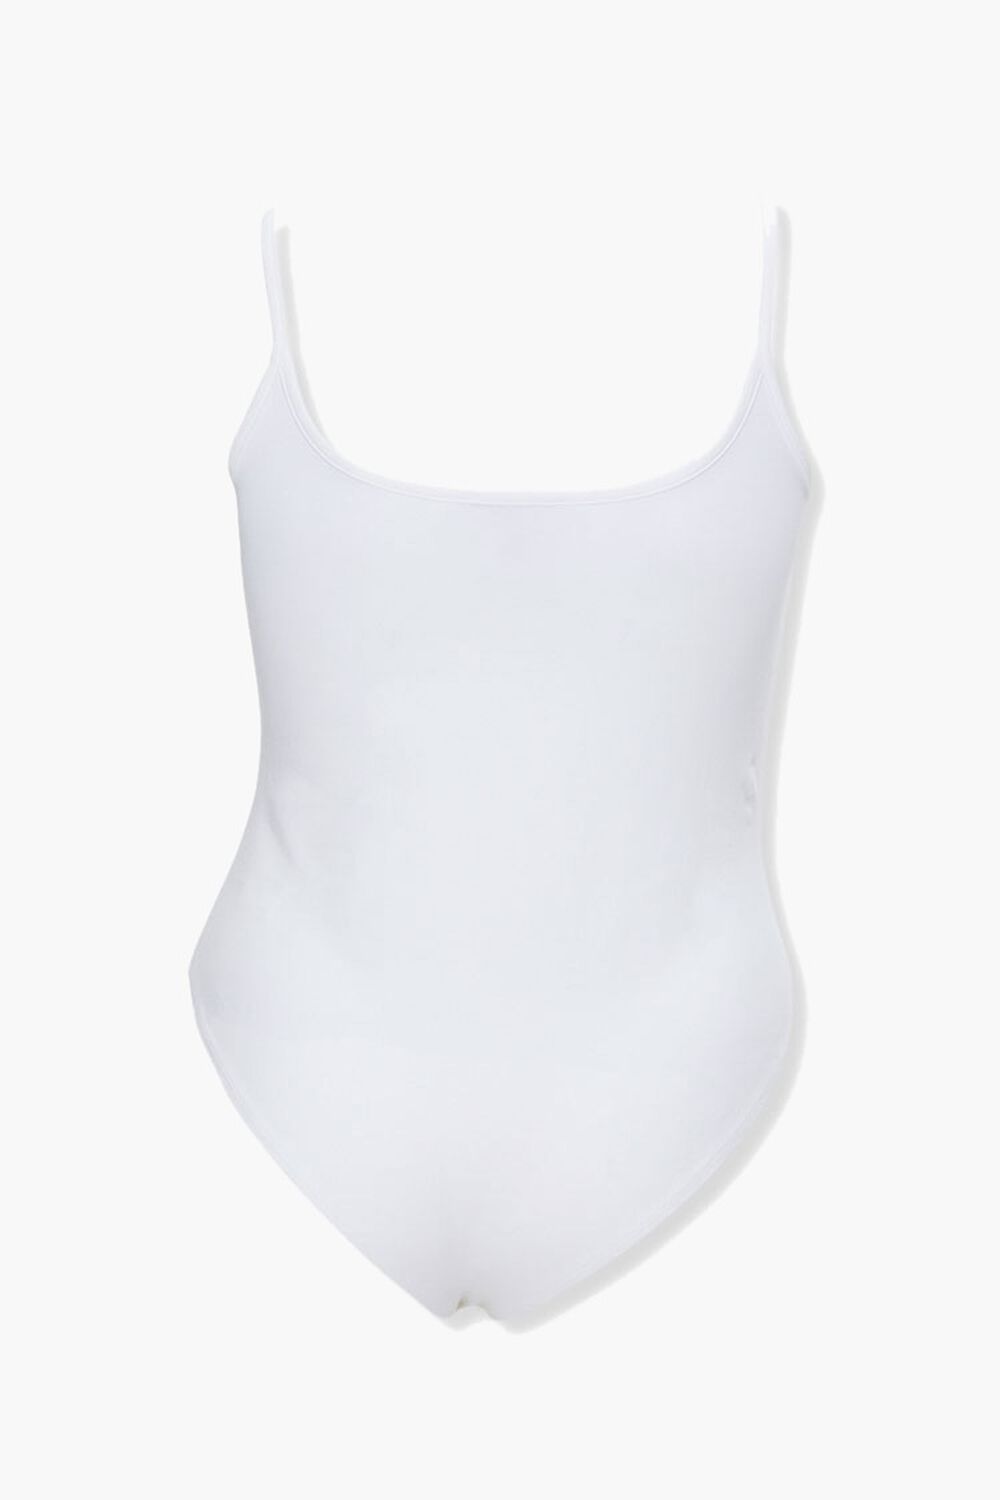 WHITE Plus Size Cami Bodysuit, image 3